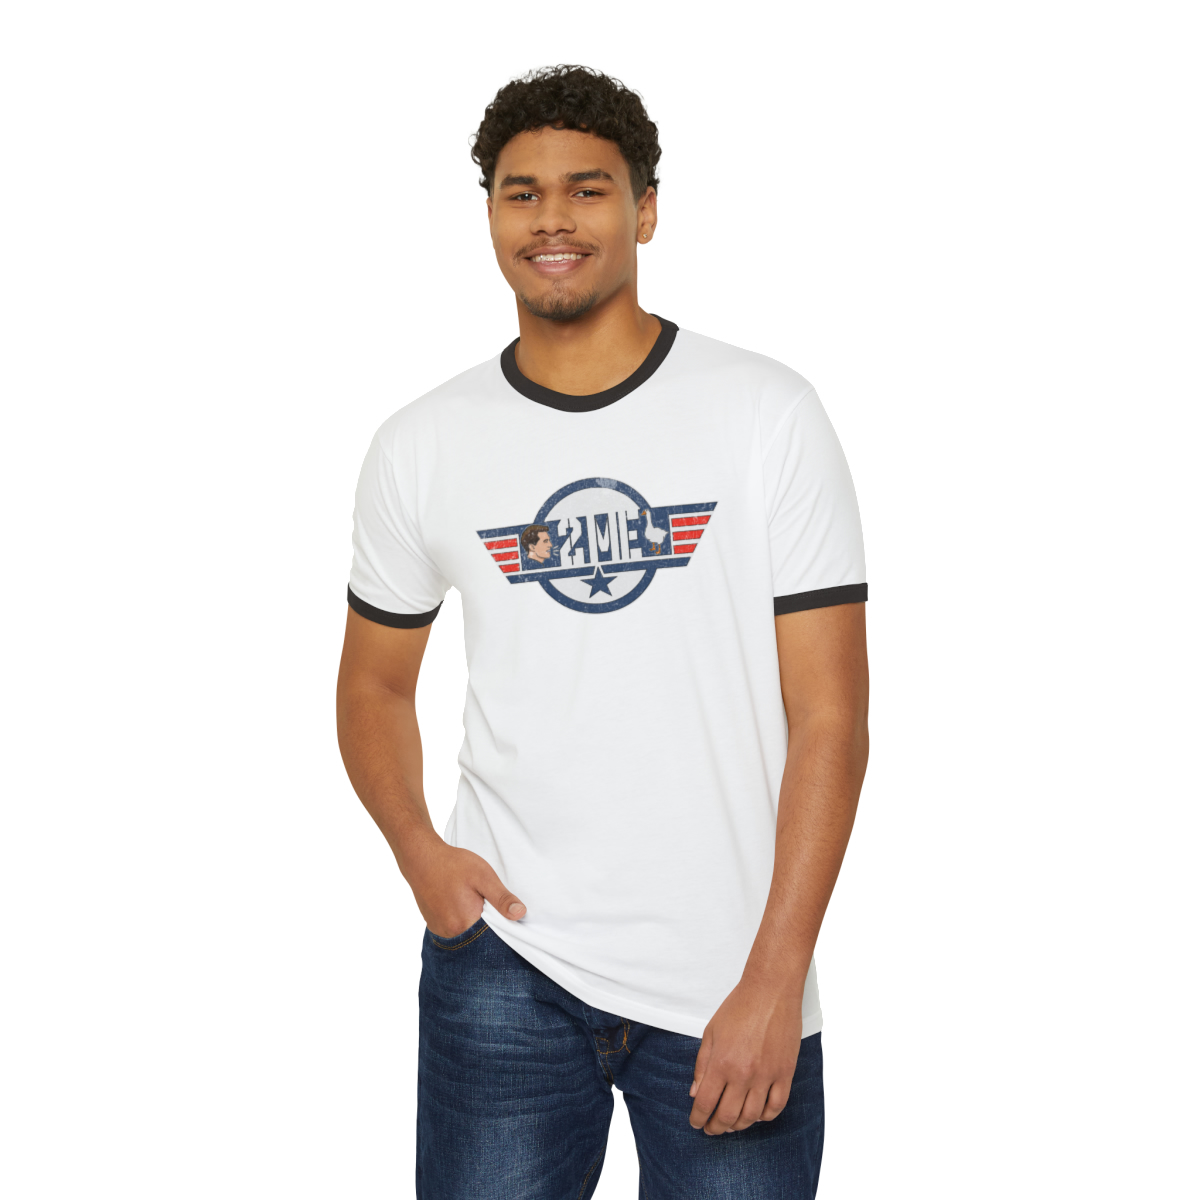 Goose (weathered) - Unisex Cotton Ringer T-Shirt